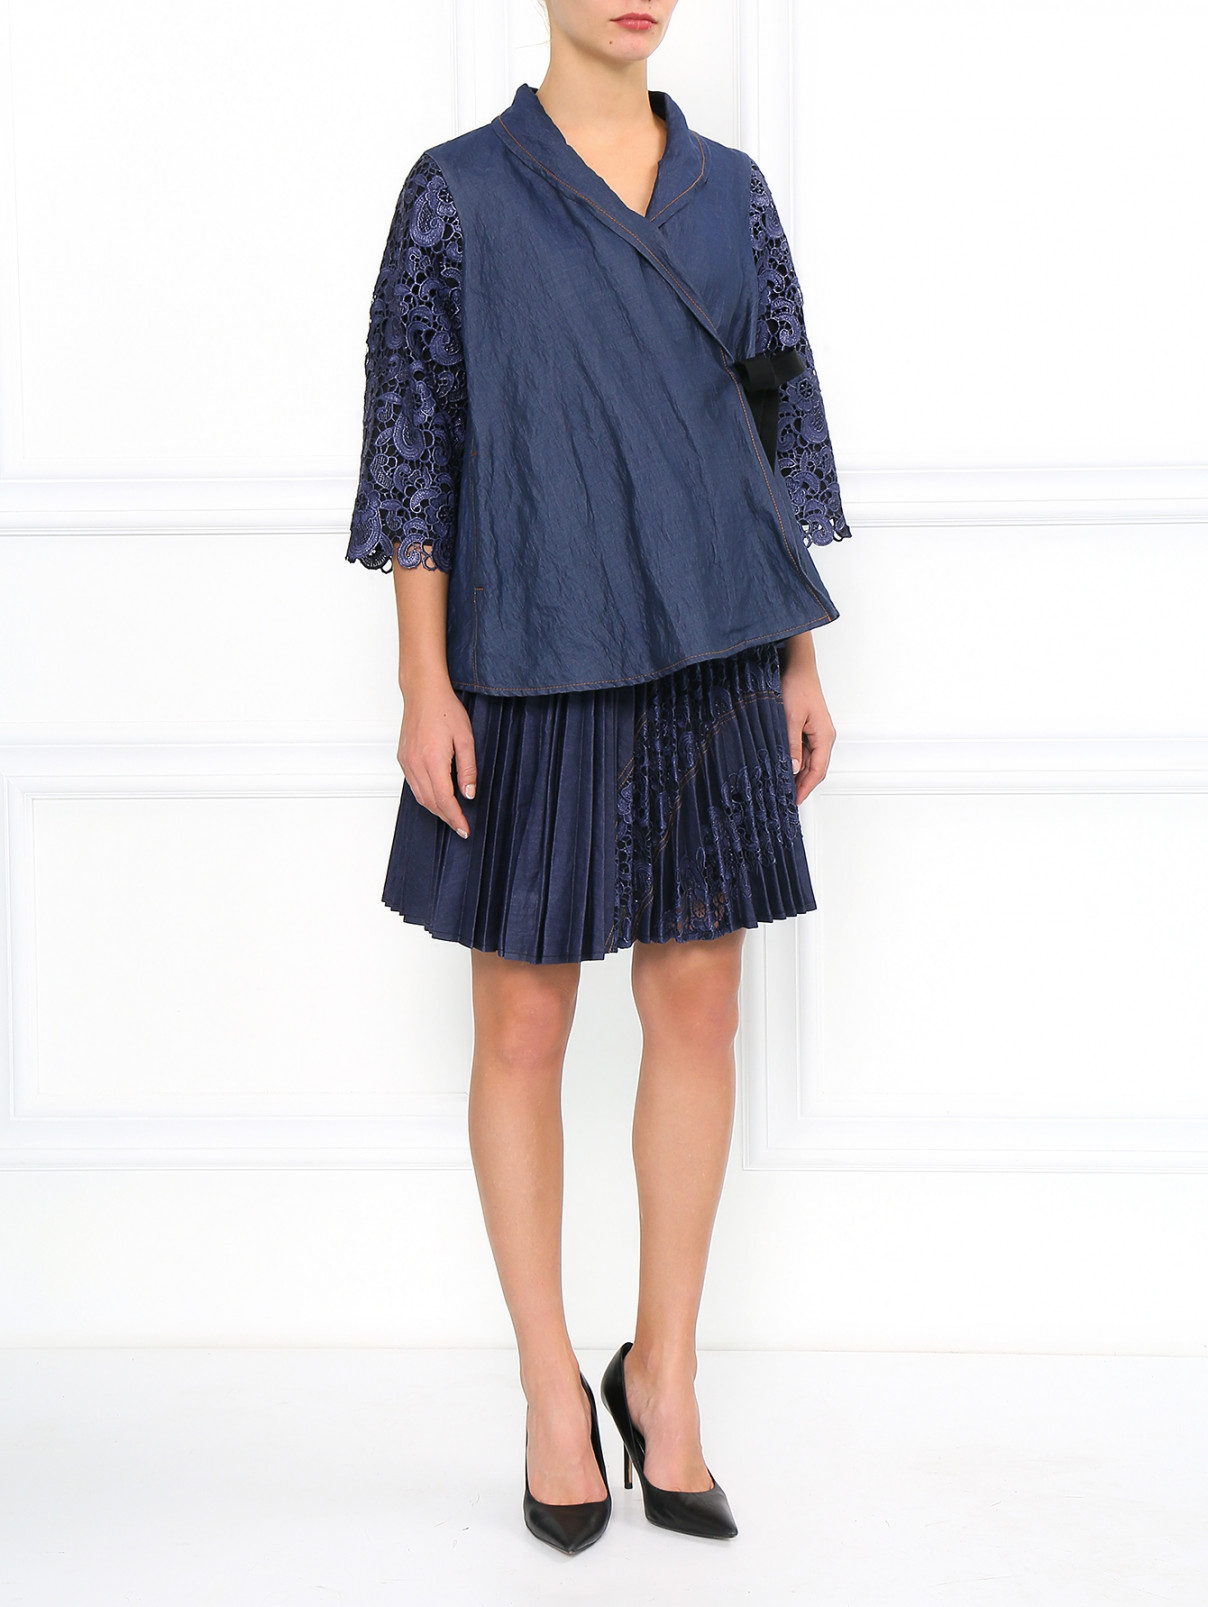 Плиссированная юбка с кружевной вставкой Antonio Marras  –  Модель Общий вид  – Цвет:  Синий